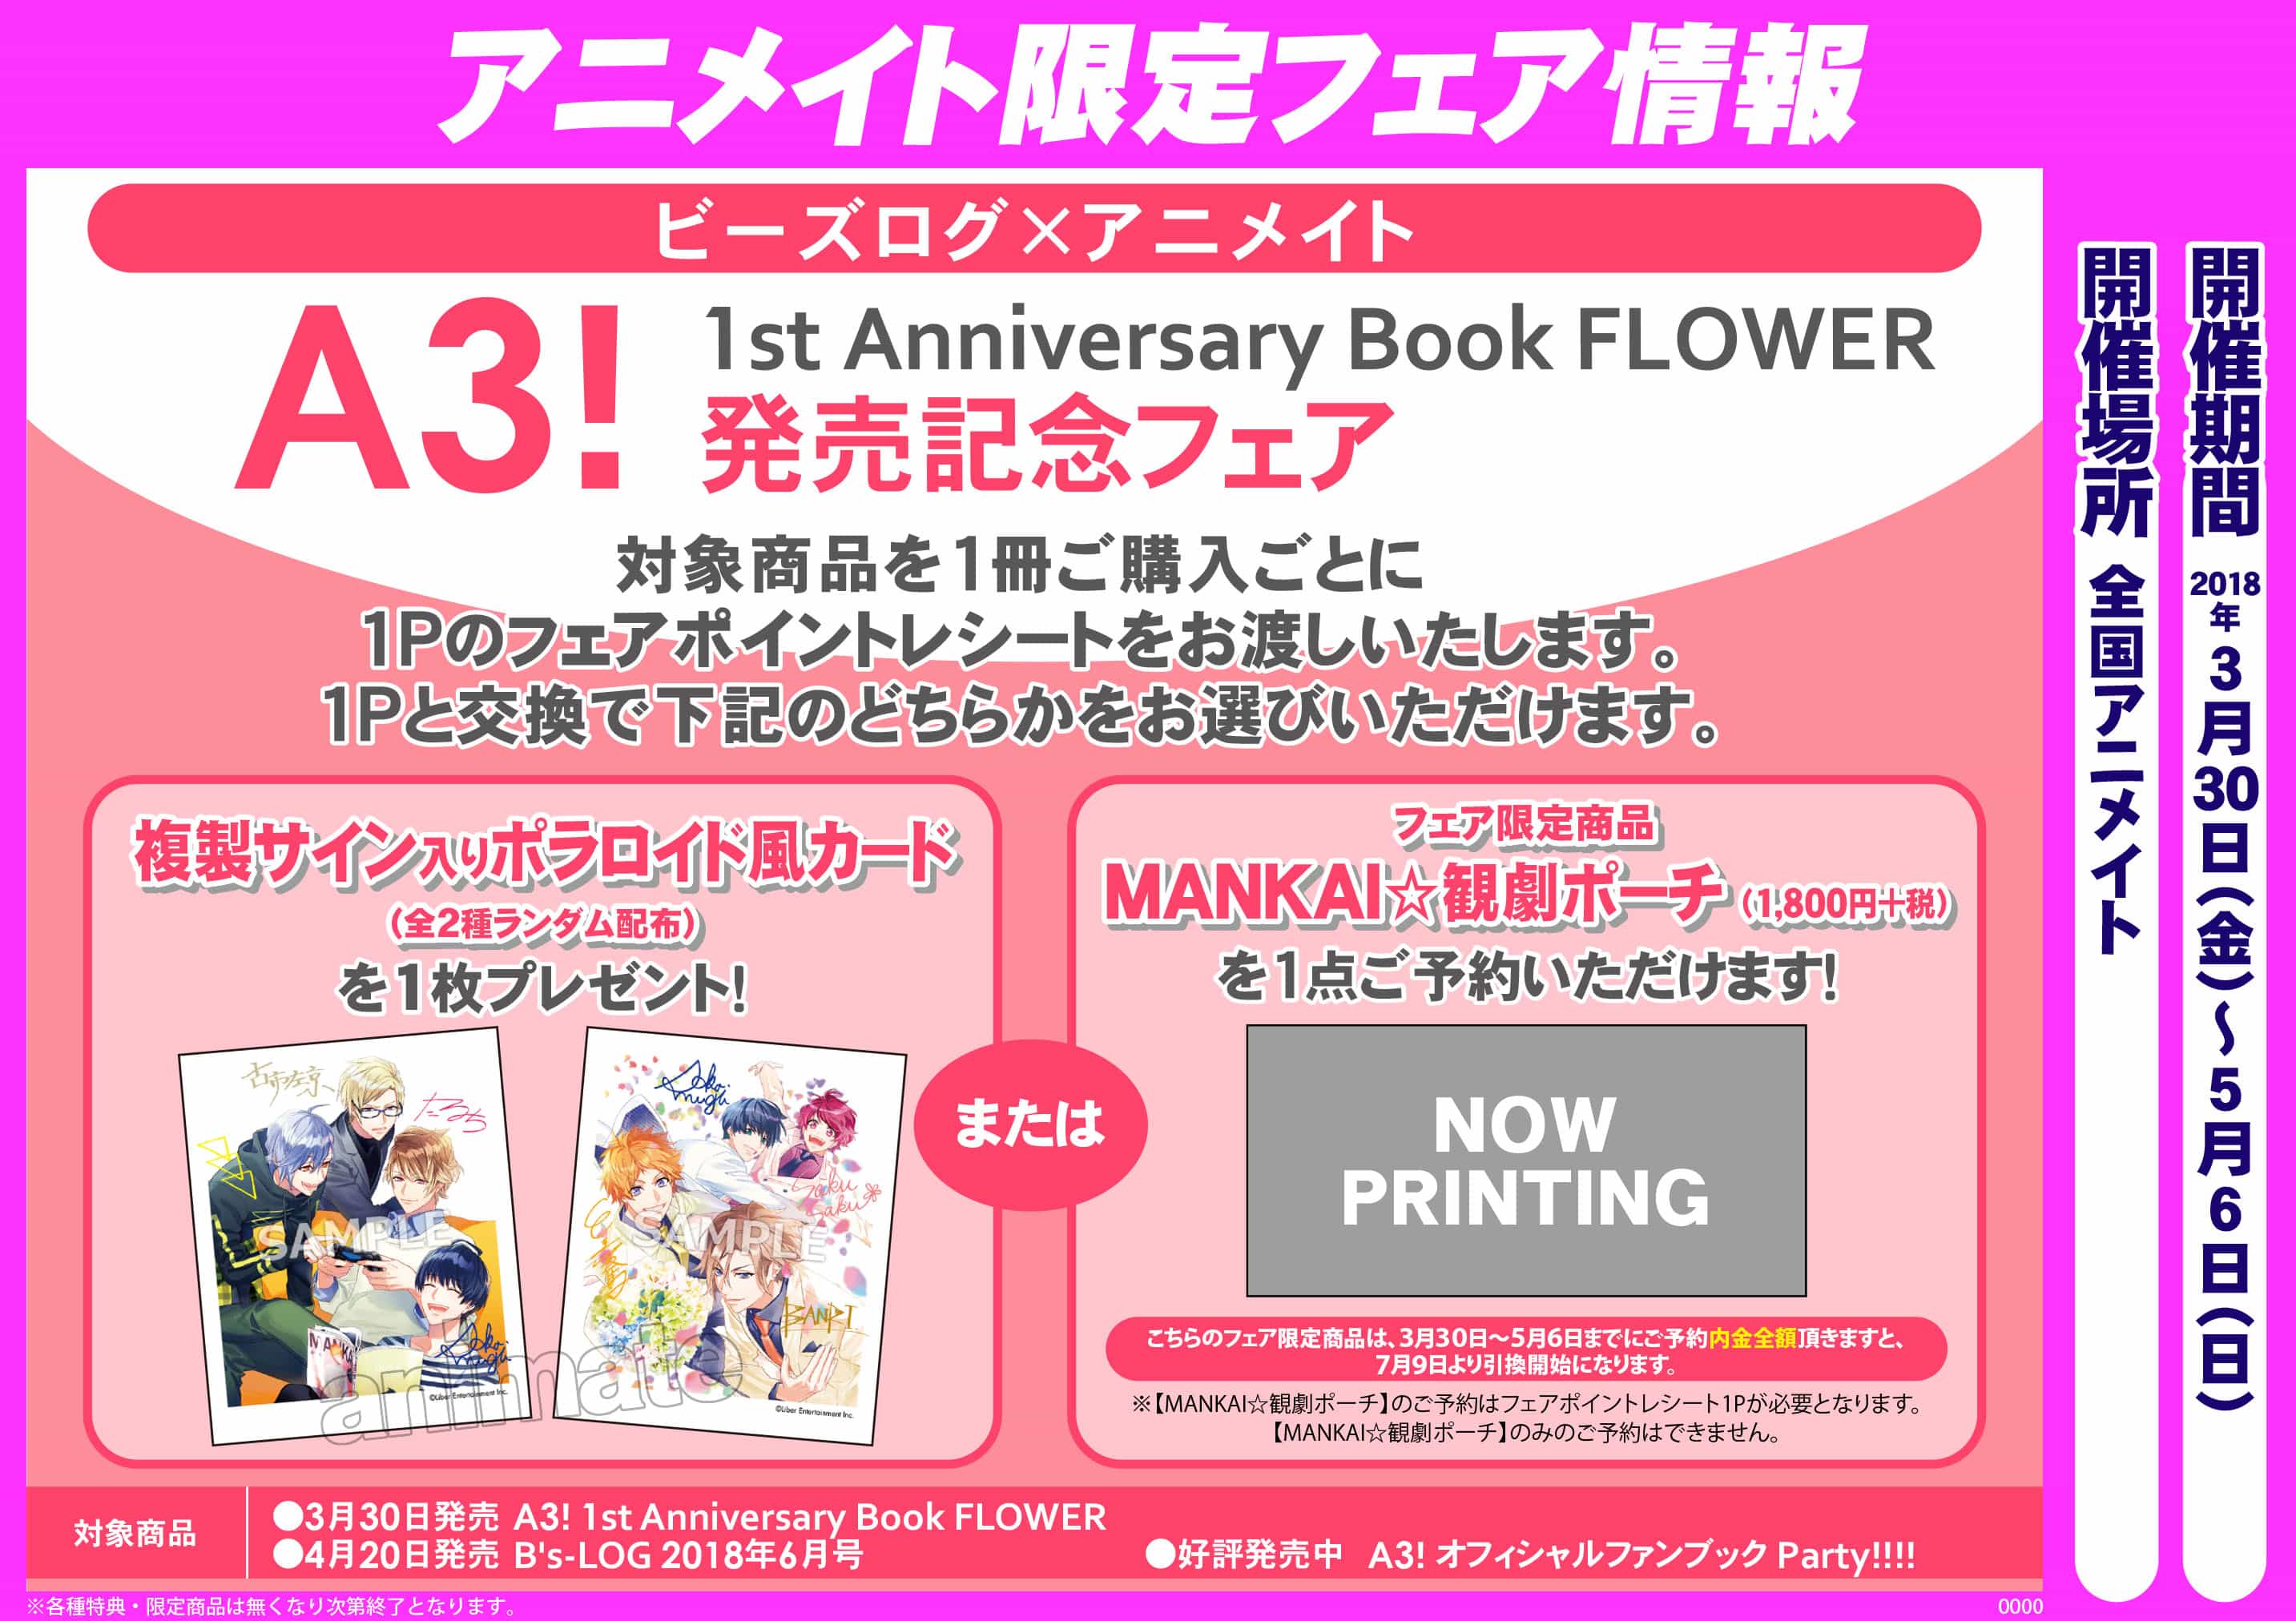 ビーズログ アニメイト A3 1st Anniversary Book Flower 発売記念フェア アニメイト福岡パルコ